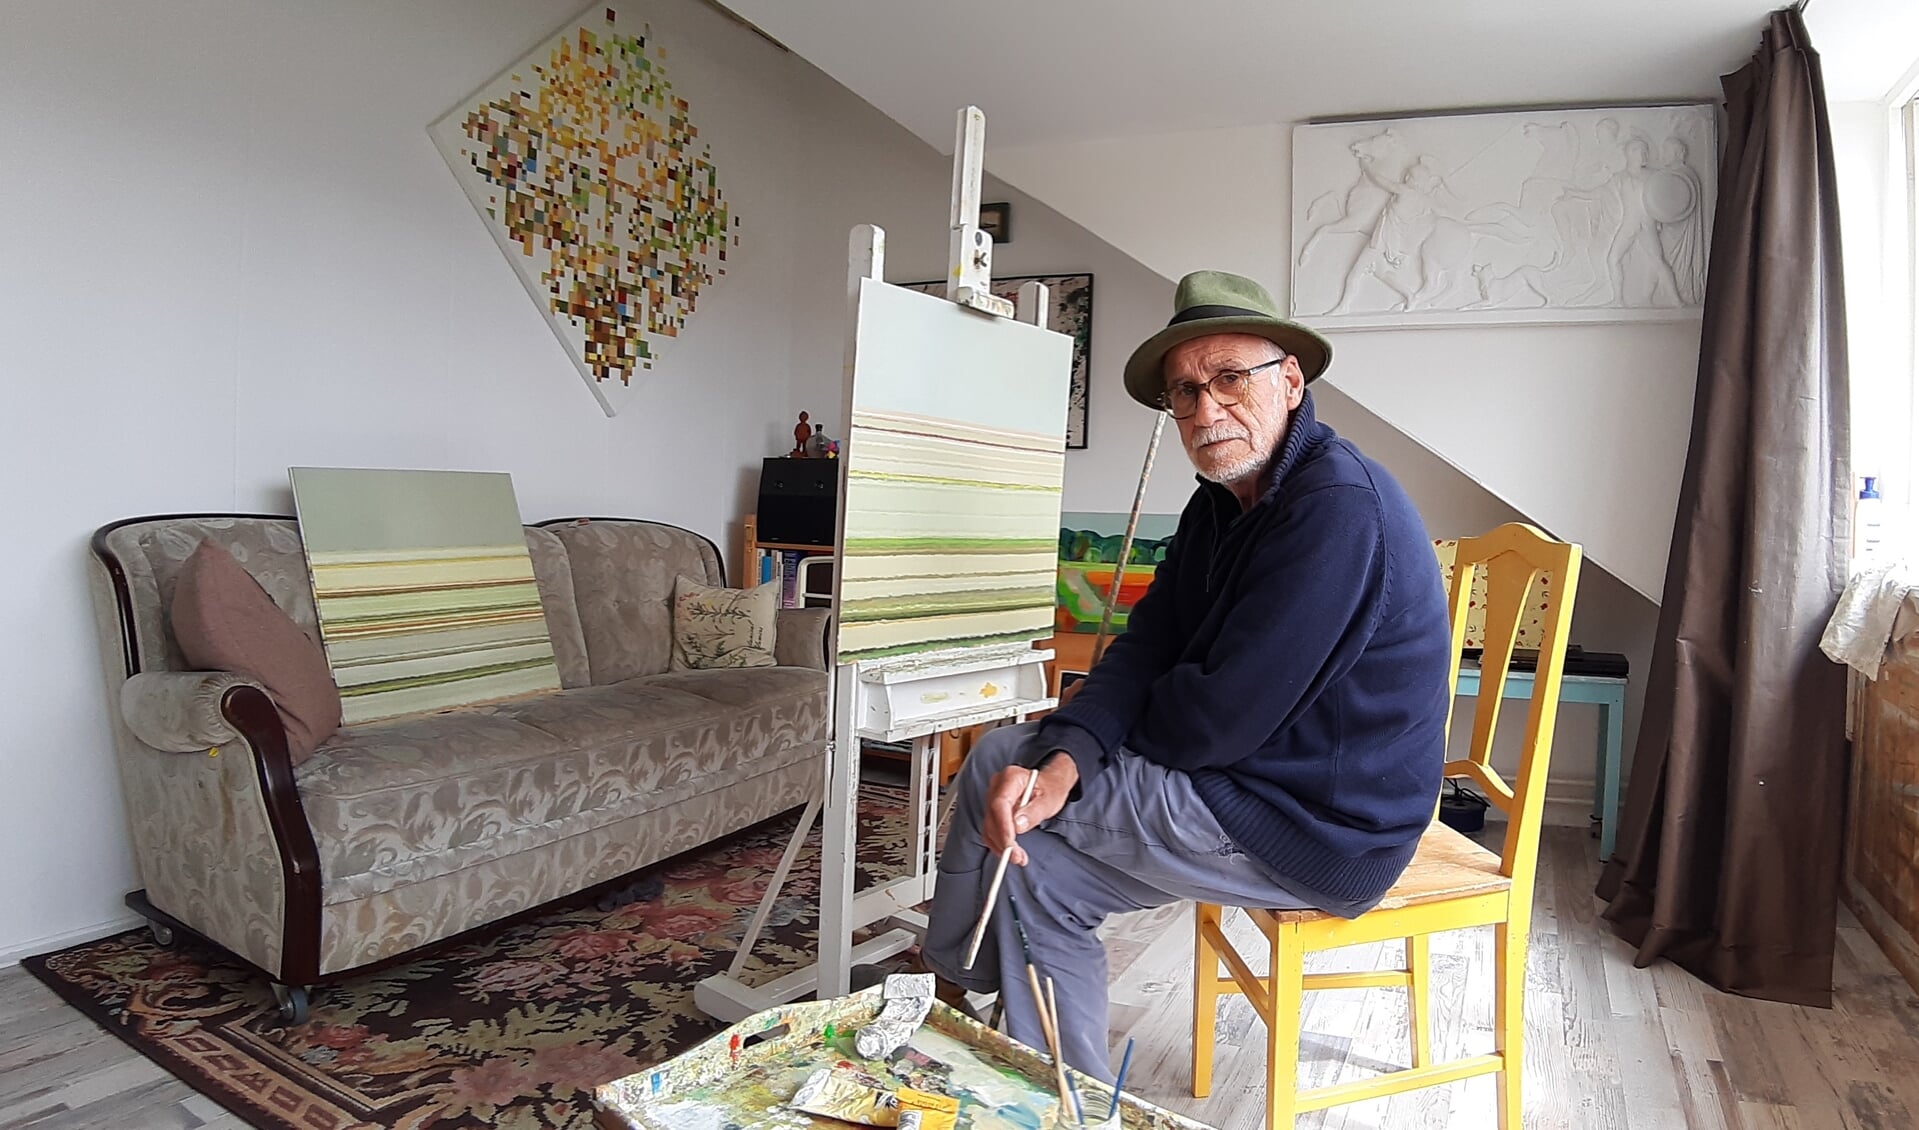 De Hillegomse kunstenaar in zijn atelier. | Foto: Denise van der Zande.